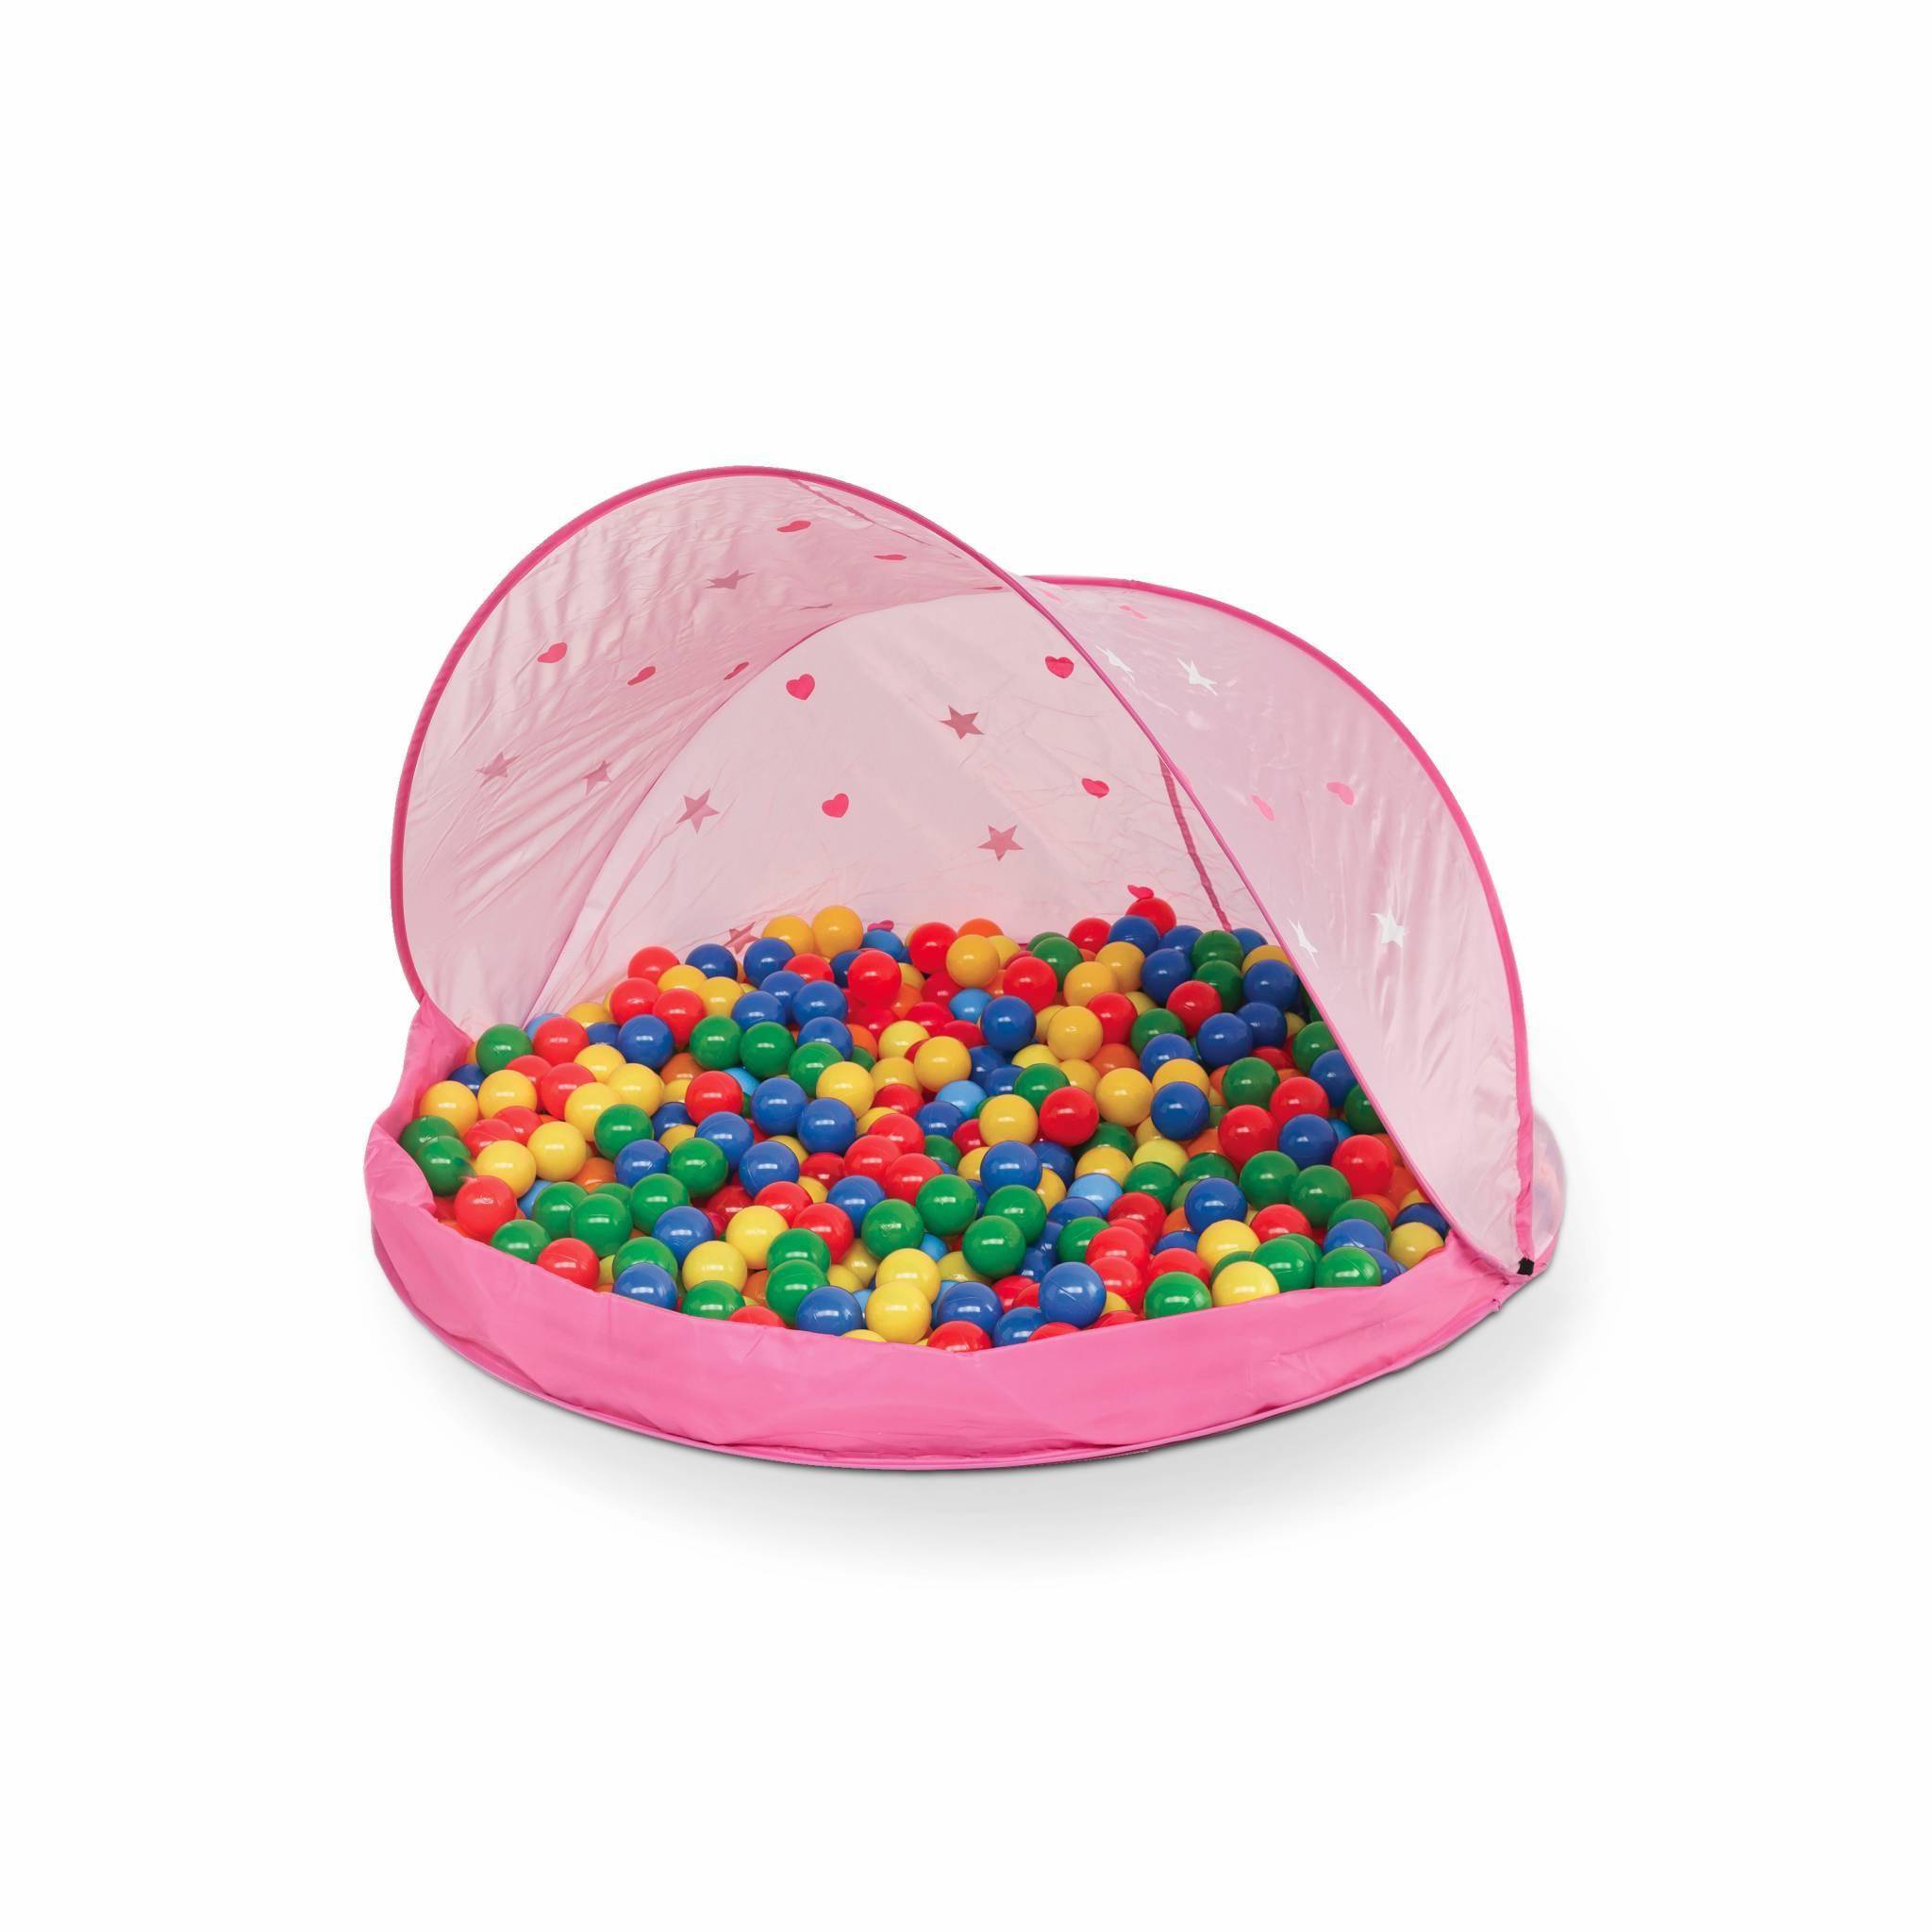 Tente de jeu pop-up rose pour enfants – Paulette, tente de protection solaire avec 50 balles Photo1